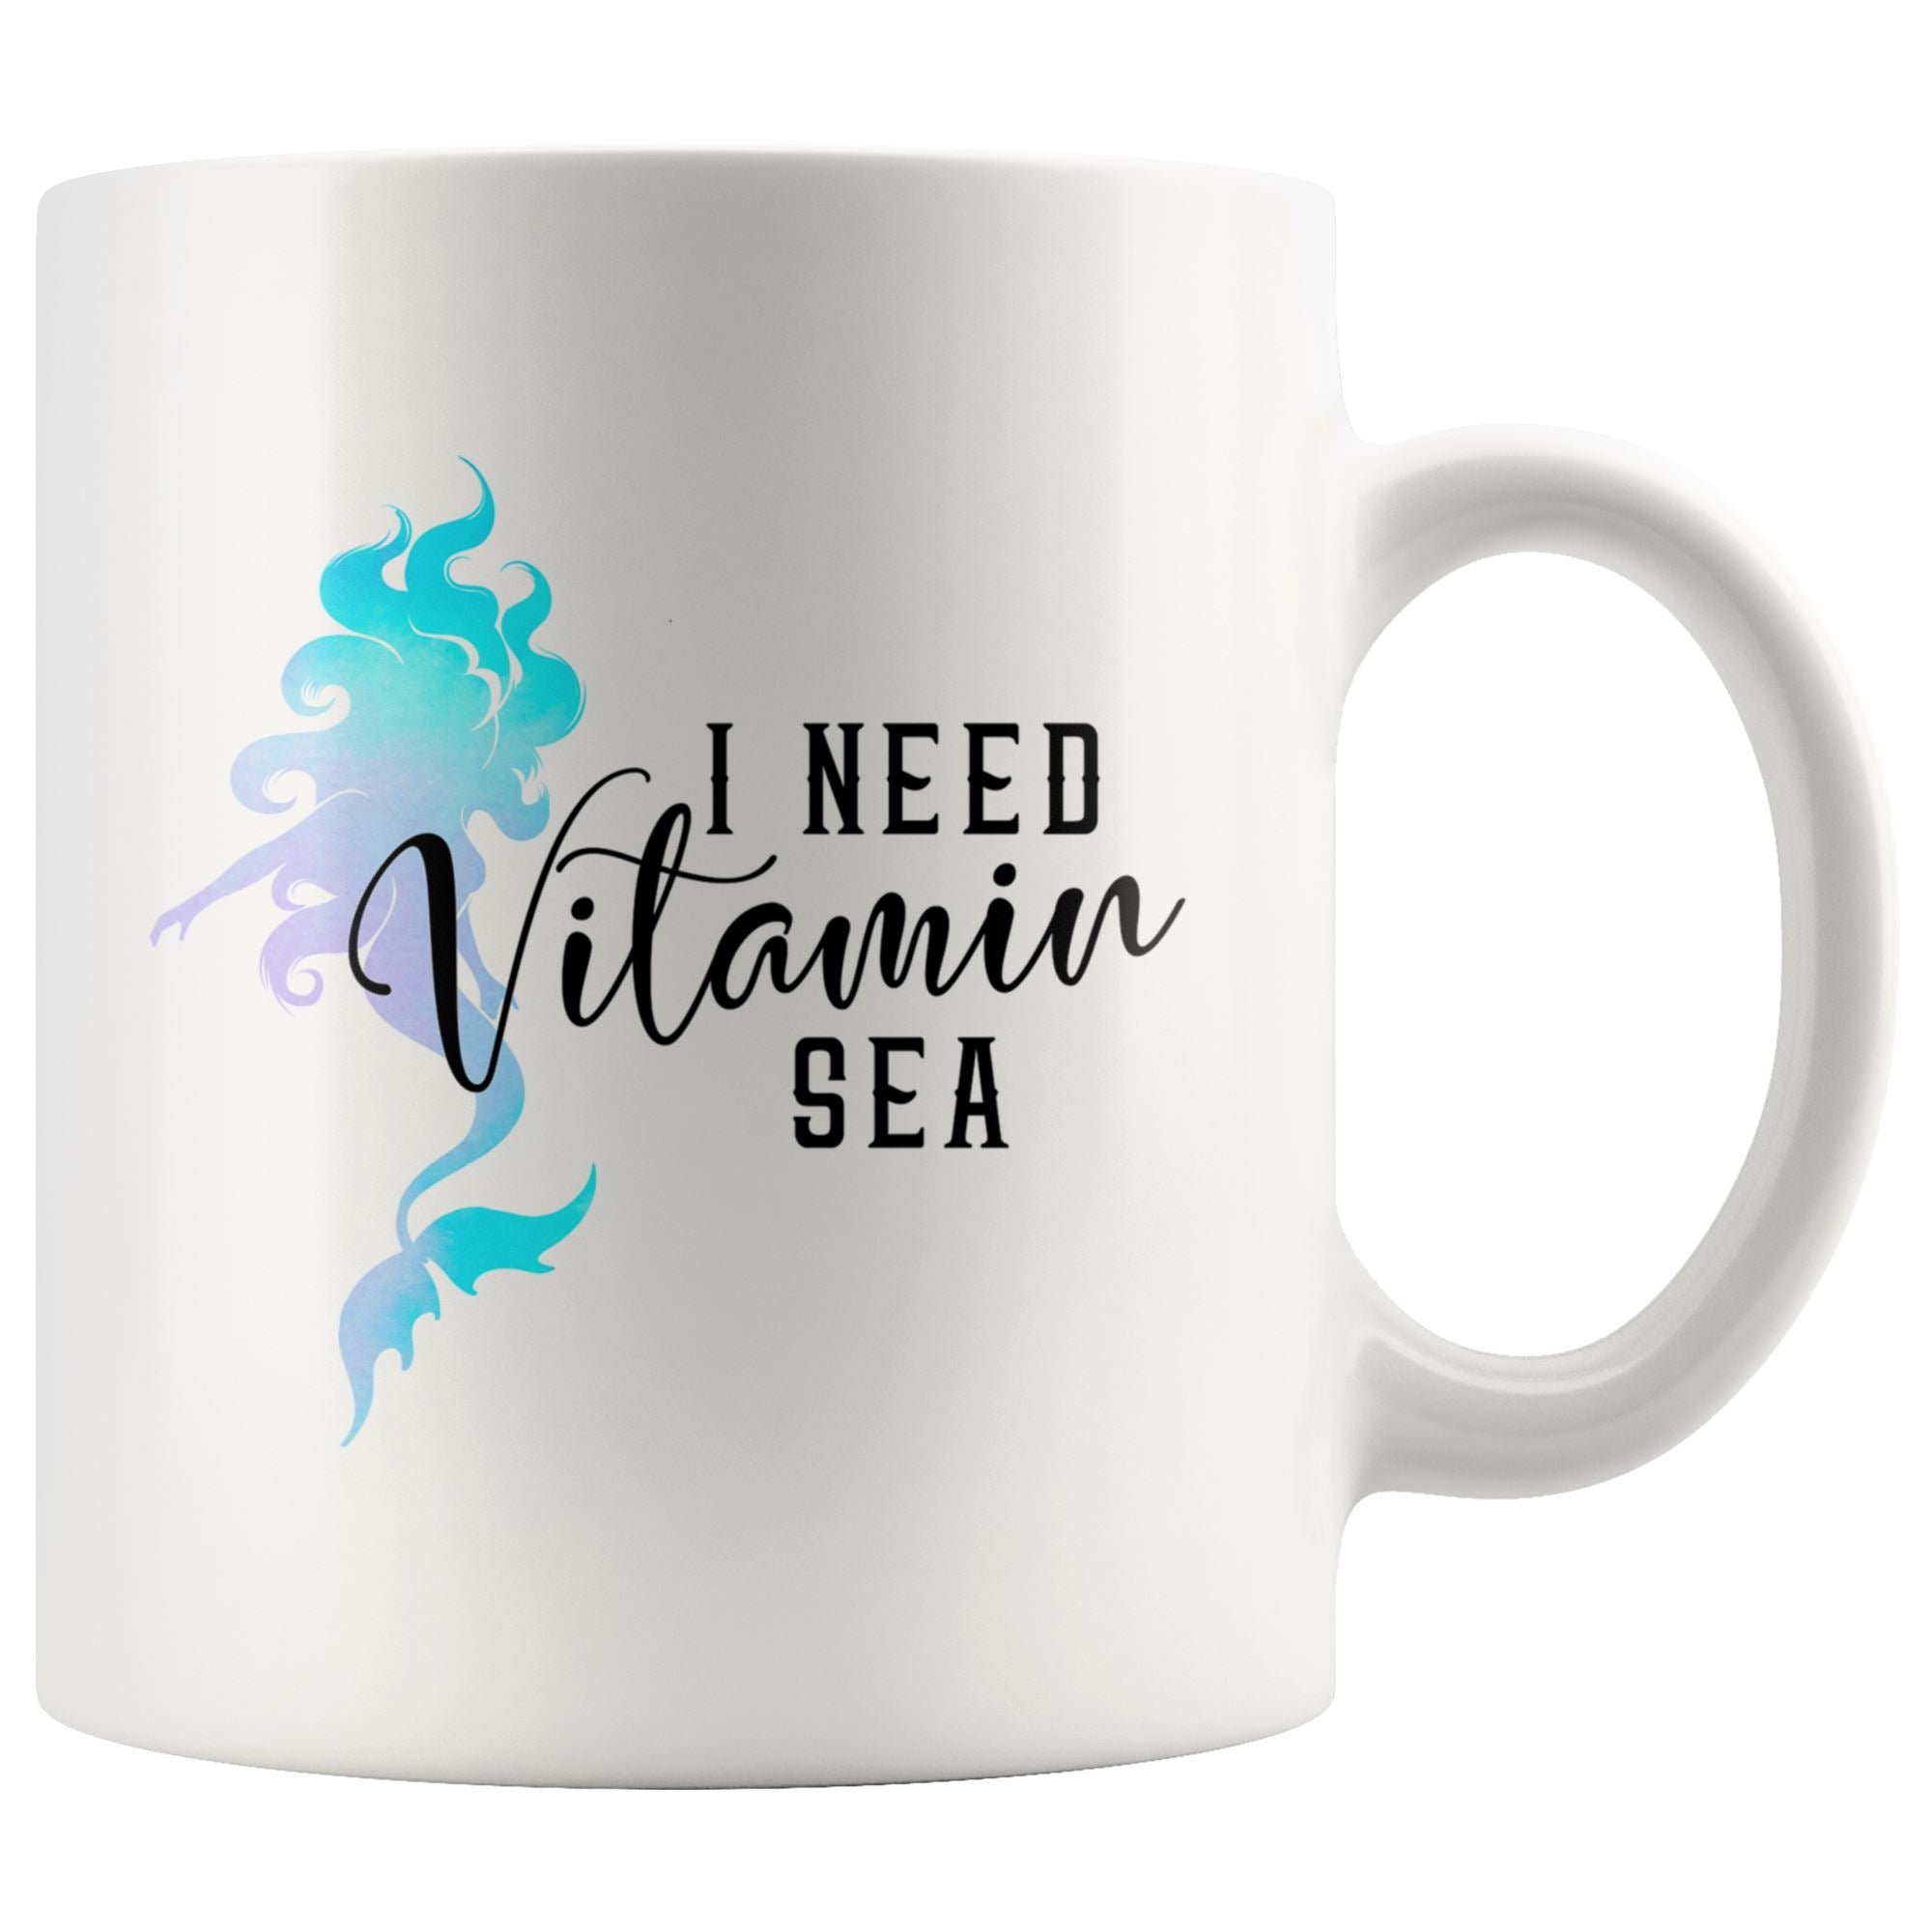 I Need Vitamin Sea Drinkware teelaunch 11oz Mug 